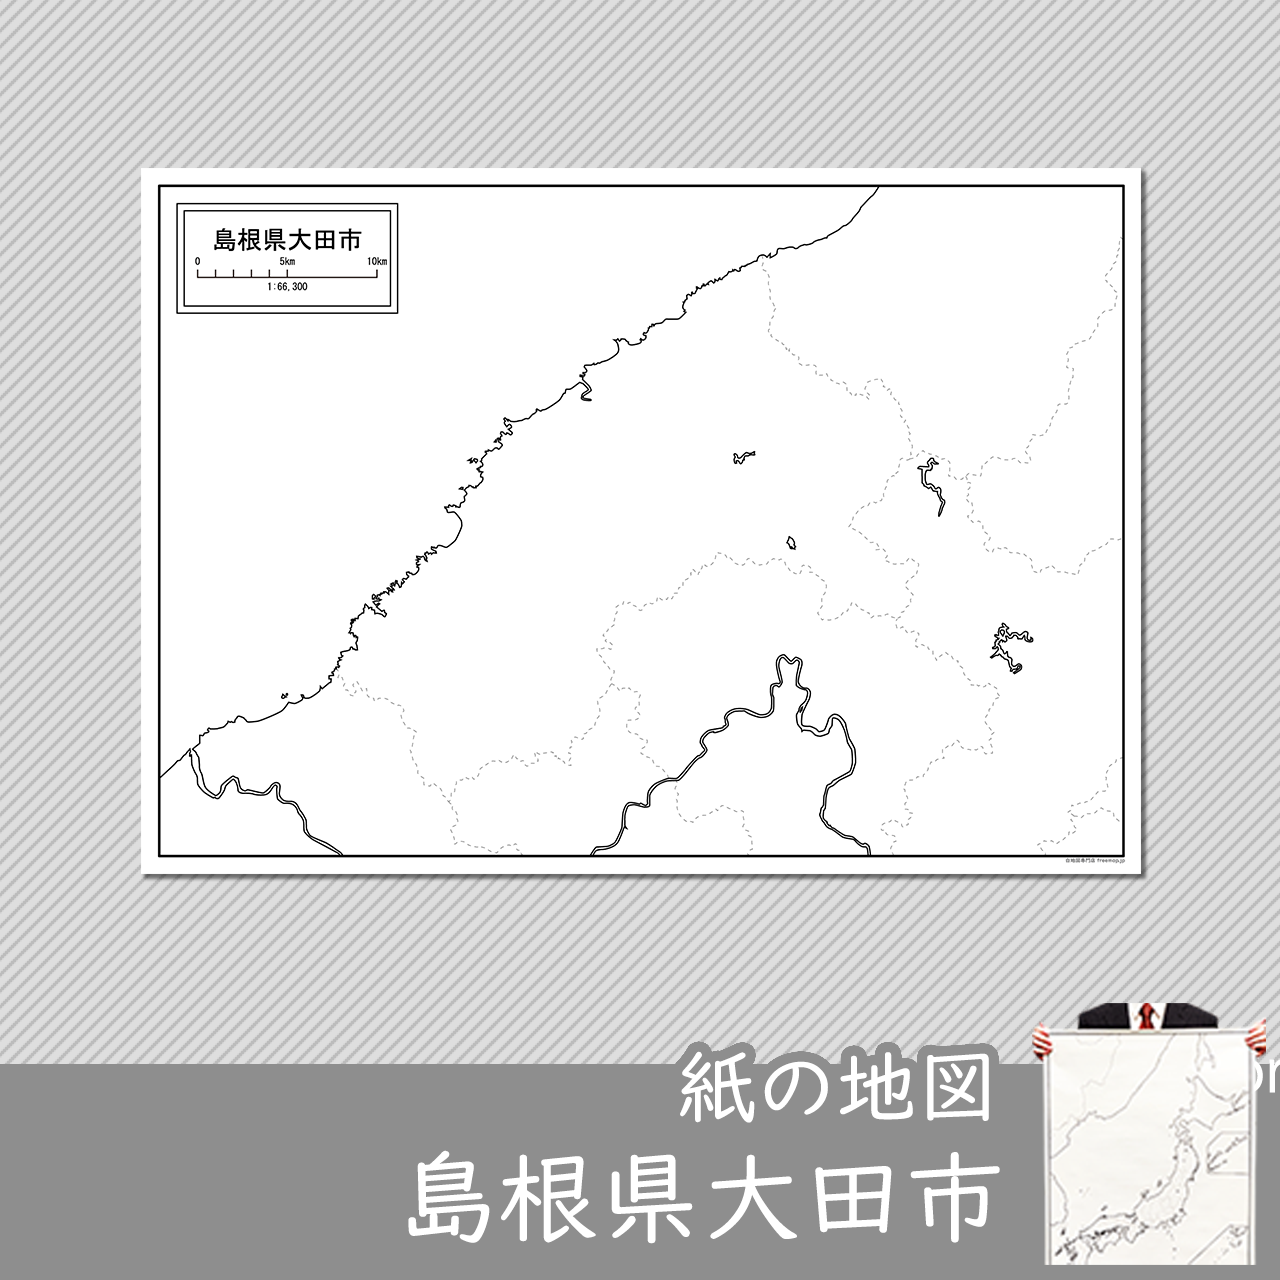 大田市の紙の白地図のサムネイル